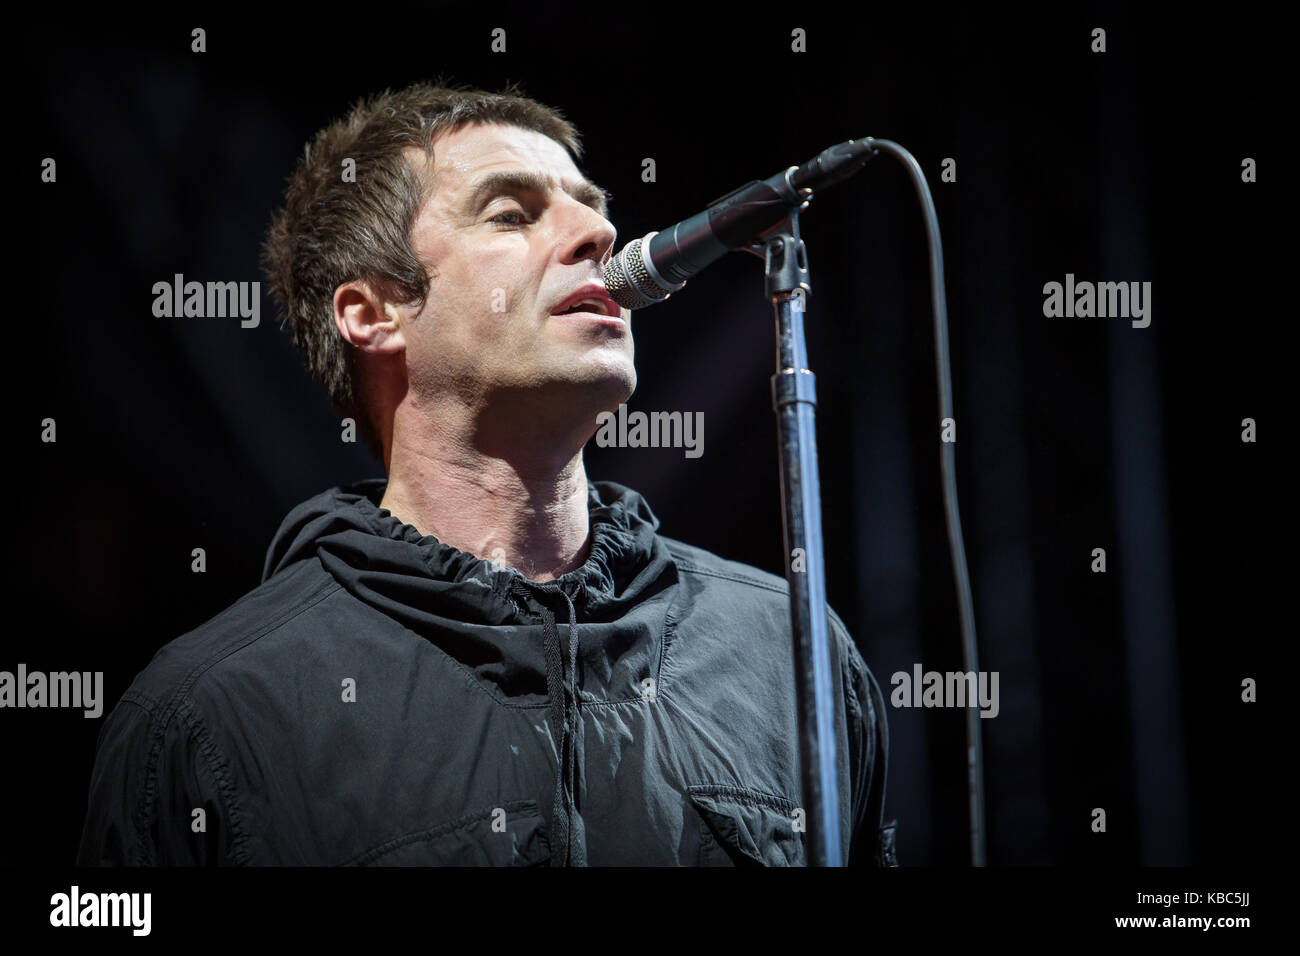 Il cantante, cantautore e musicista inglese Liam Gallagher esegue un concerto dal vivo durante il festival musicale norvegese Bergen 2017. Liam Gallagher è conosciuto come il cantante della rock band inglese Oasis. Norvegia, 14/06 2017. Foto Stock